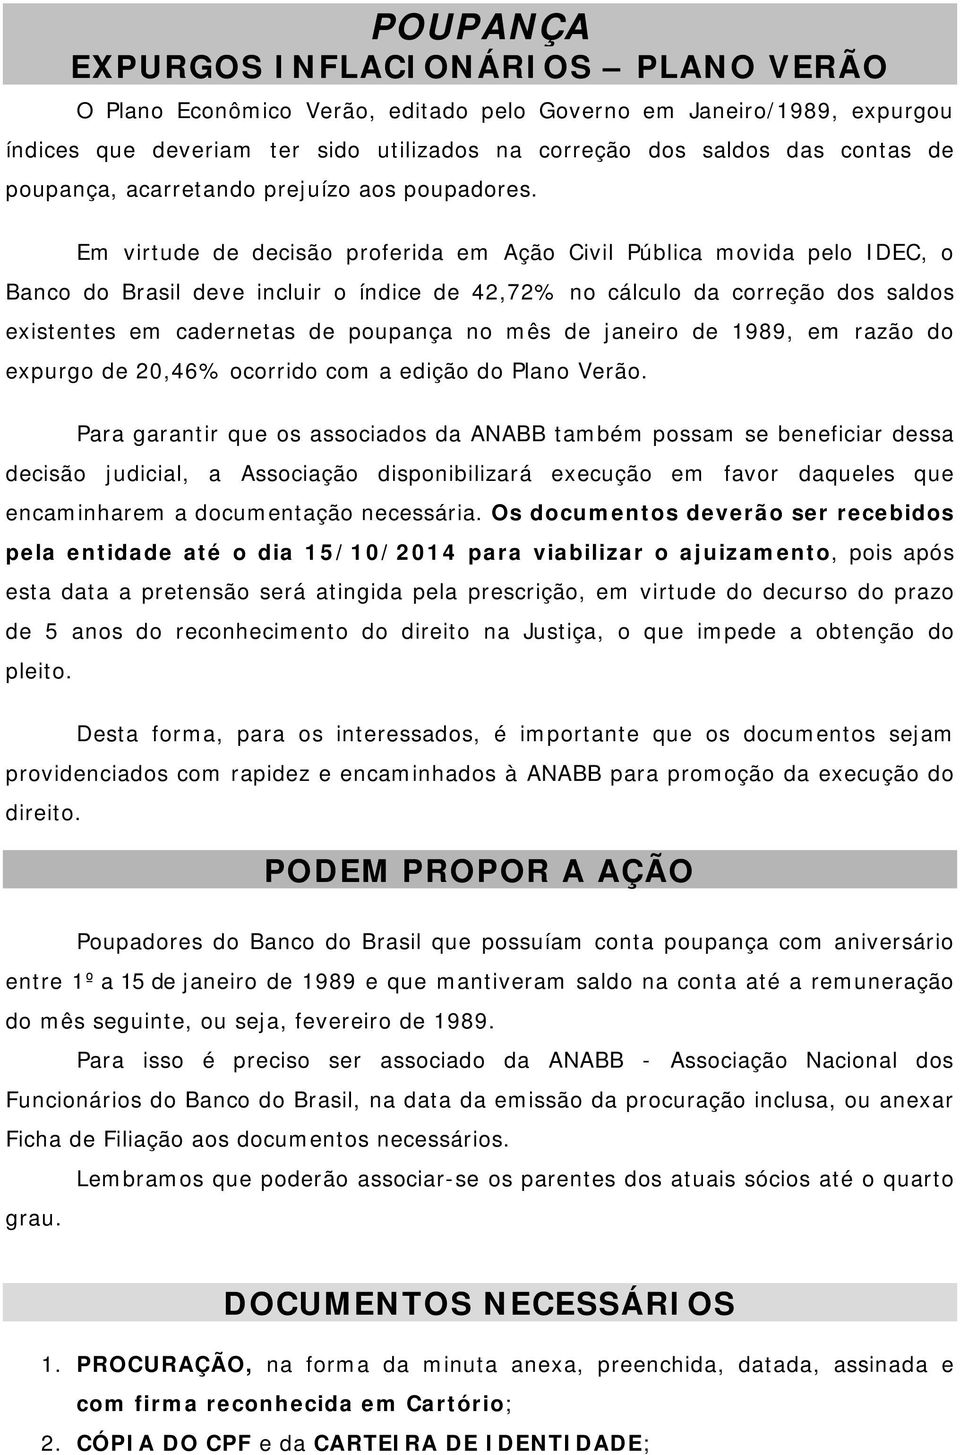 Em virtude de decisão proferida em Ação Civil Pública movida pelo IDEC, o Banco do Brasil deve incluir o índice de 42,72% no cálculo da correção dos saldos existentes em cadernetas de poupança no mês